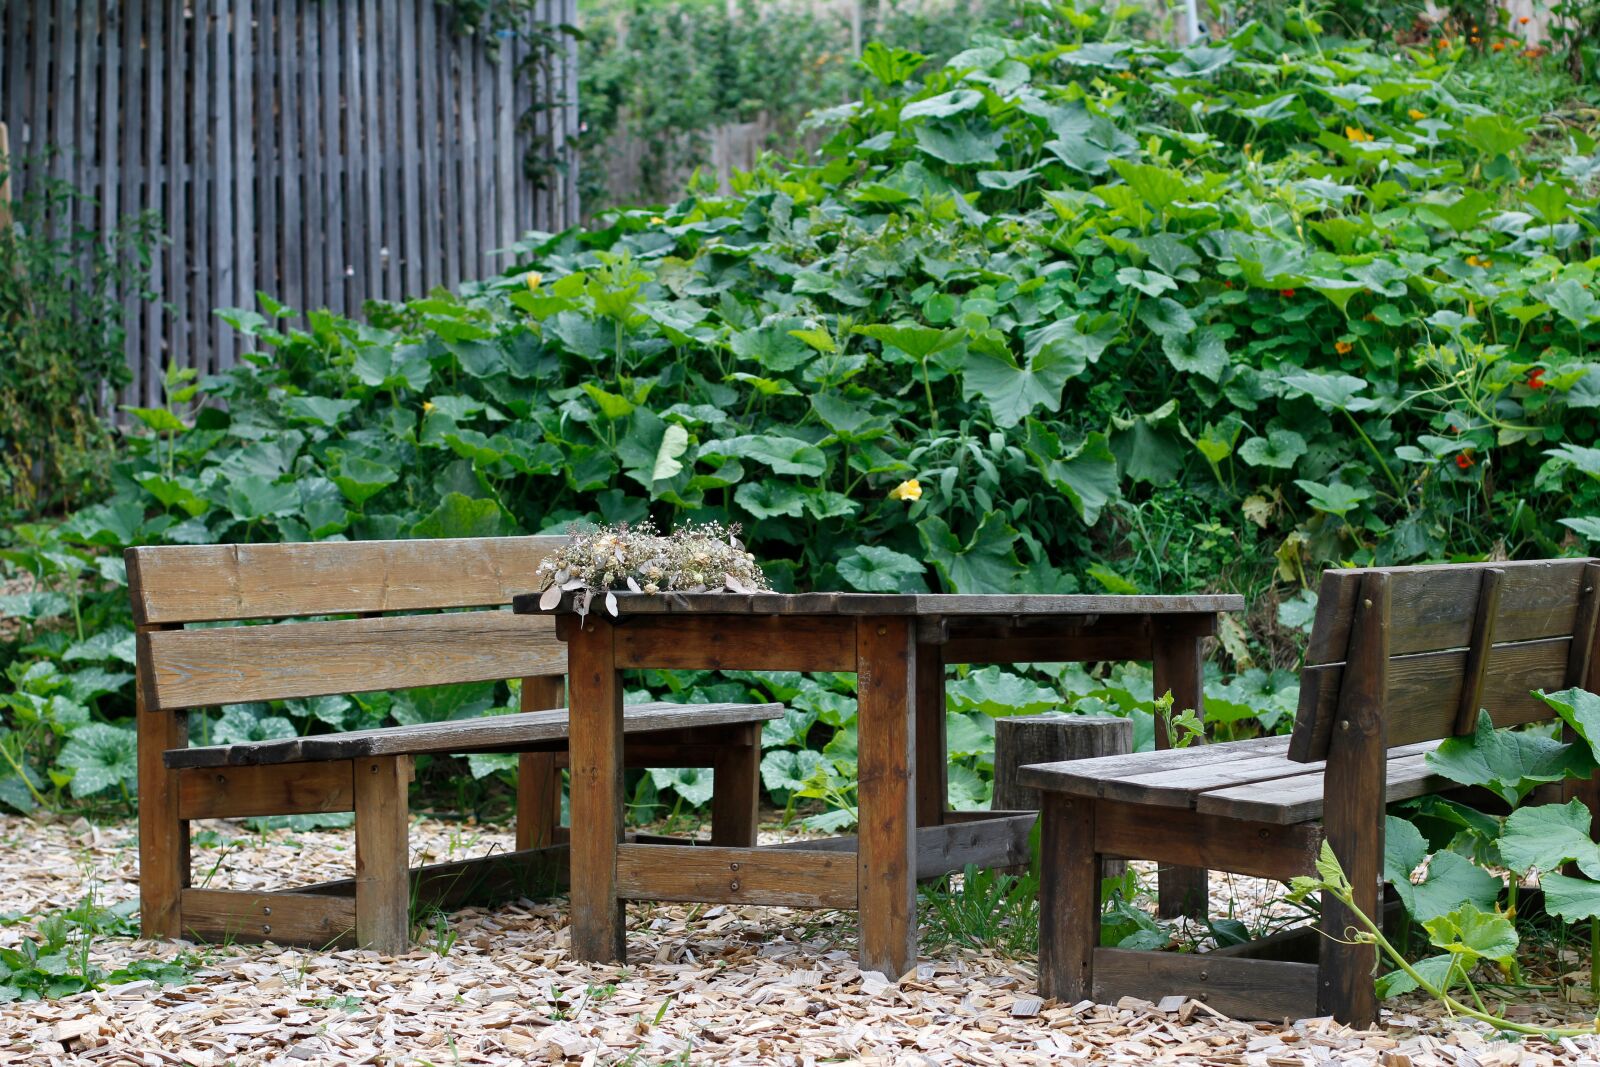 Canon EOS 60D + Canon EF 50mm F1.4 USM sample photo. Garden, garden bench, green photography